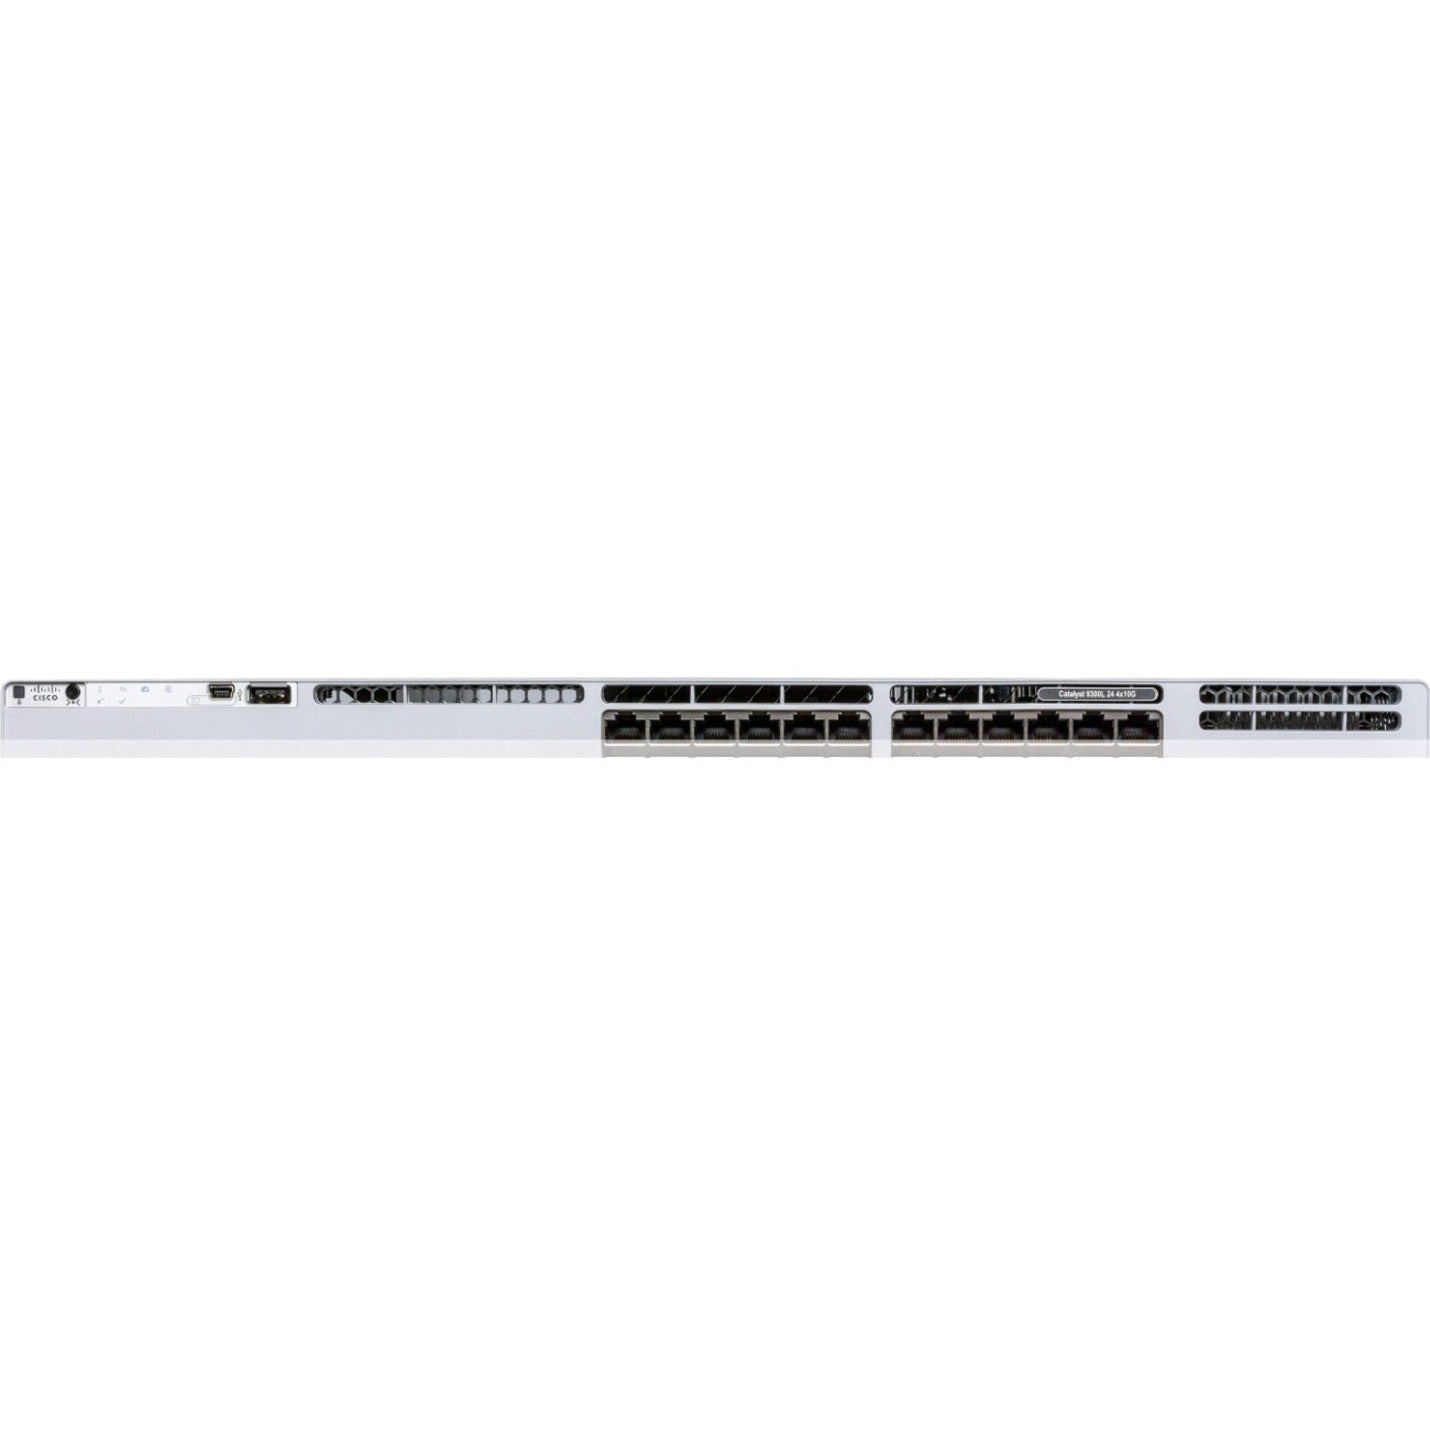 Cisco Catalyst 9300L-24T-4X-E Switch (C9300L-24T-4X-E)